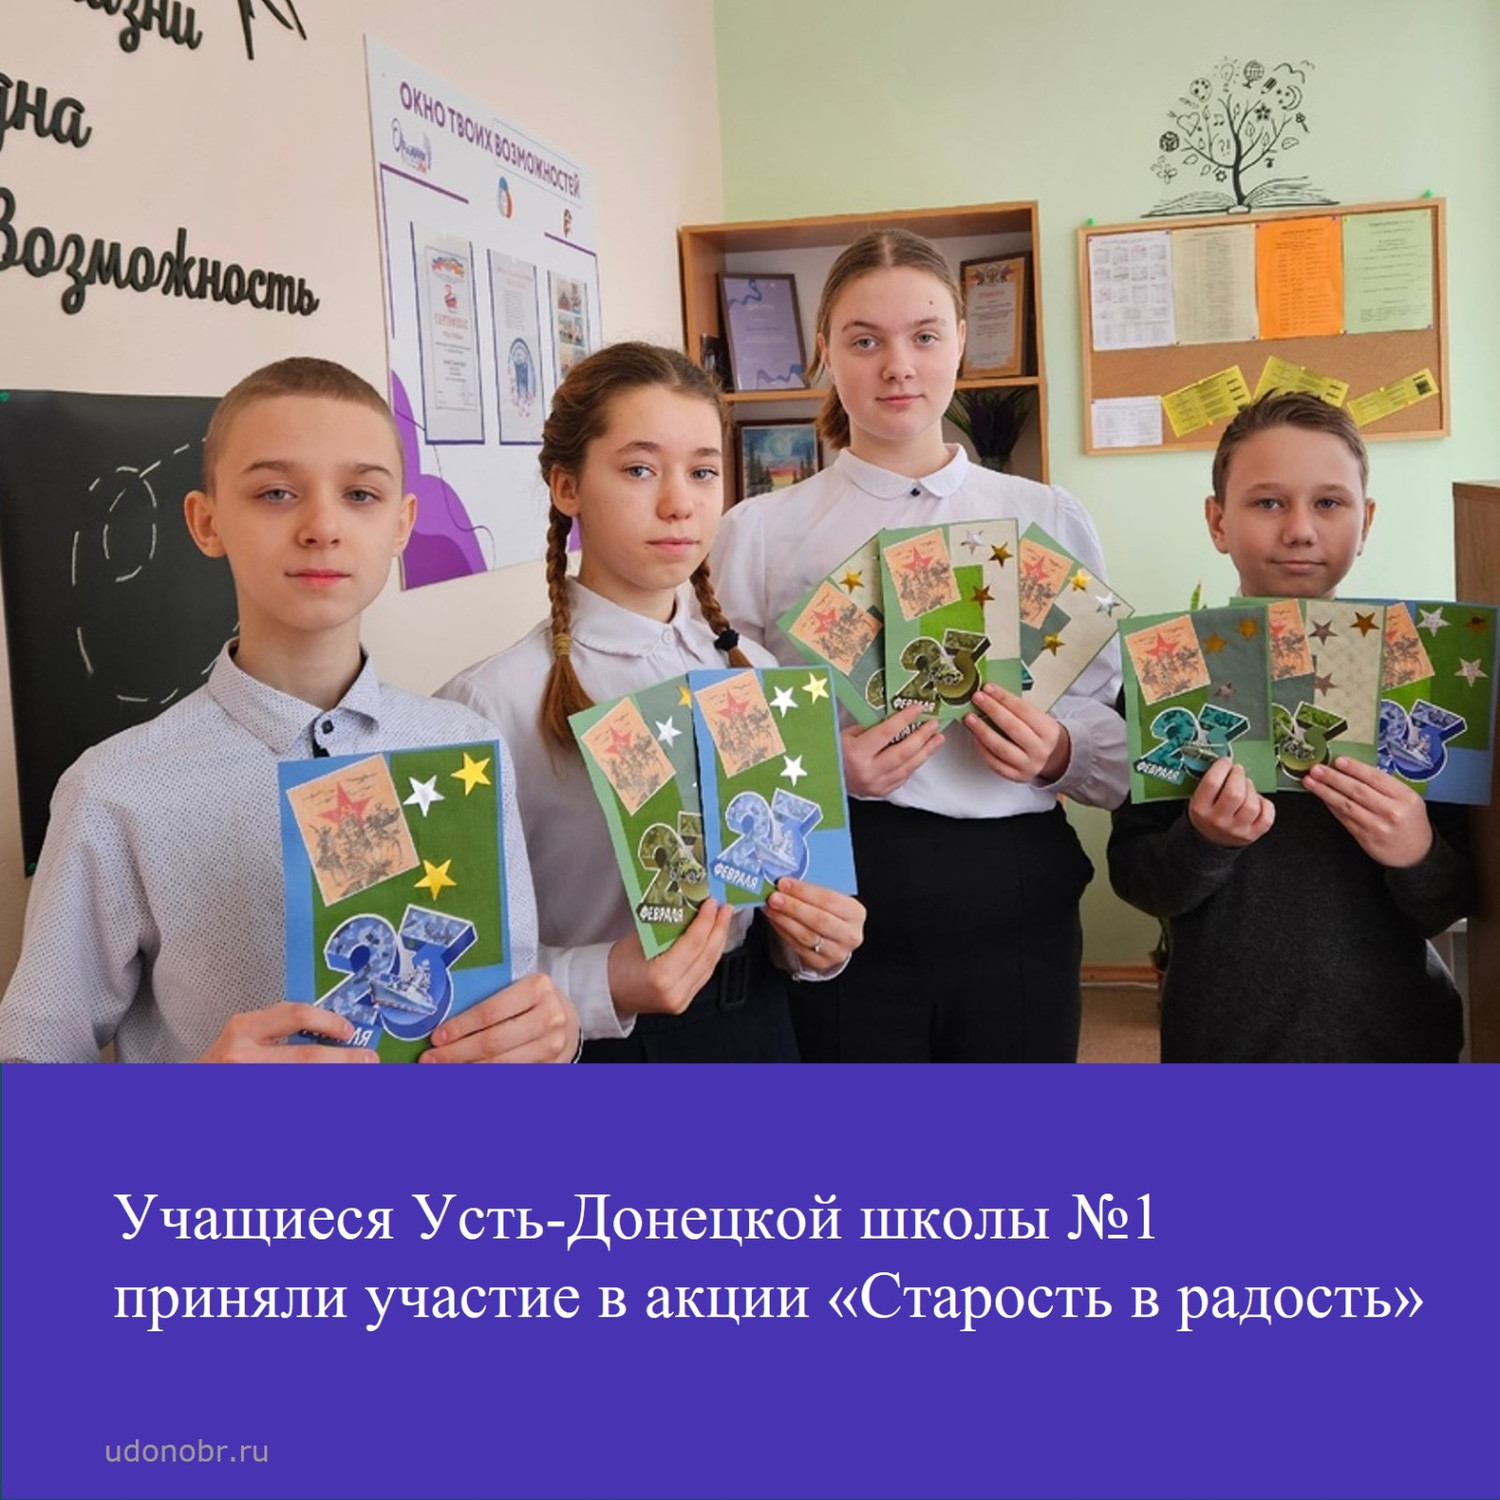 Учащиеся Усть-Донецкой школы №1 приняли участие в акции 